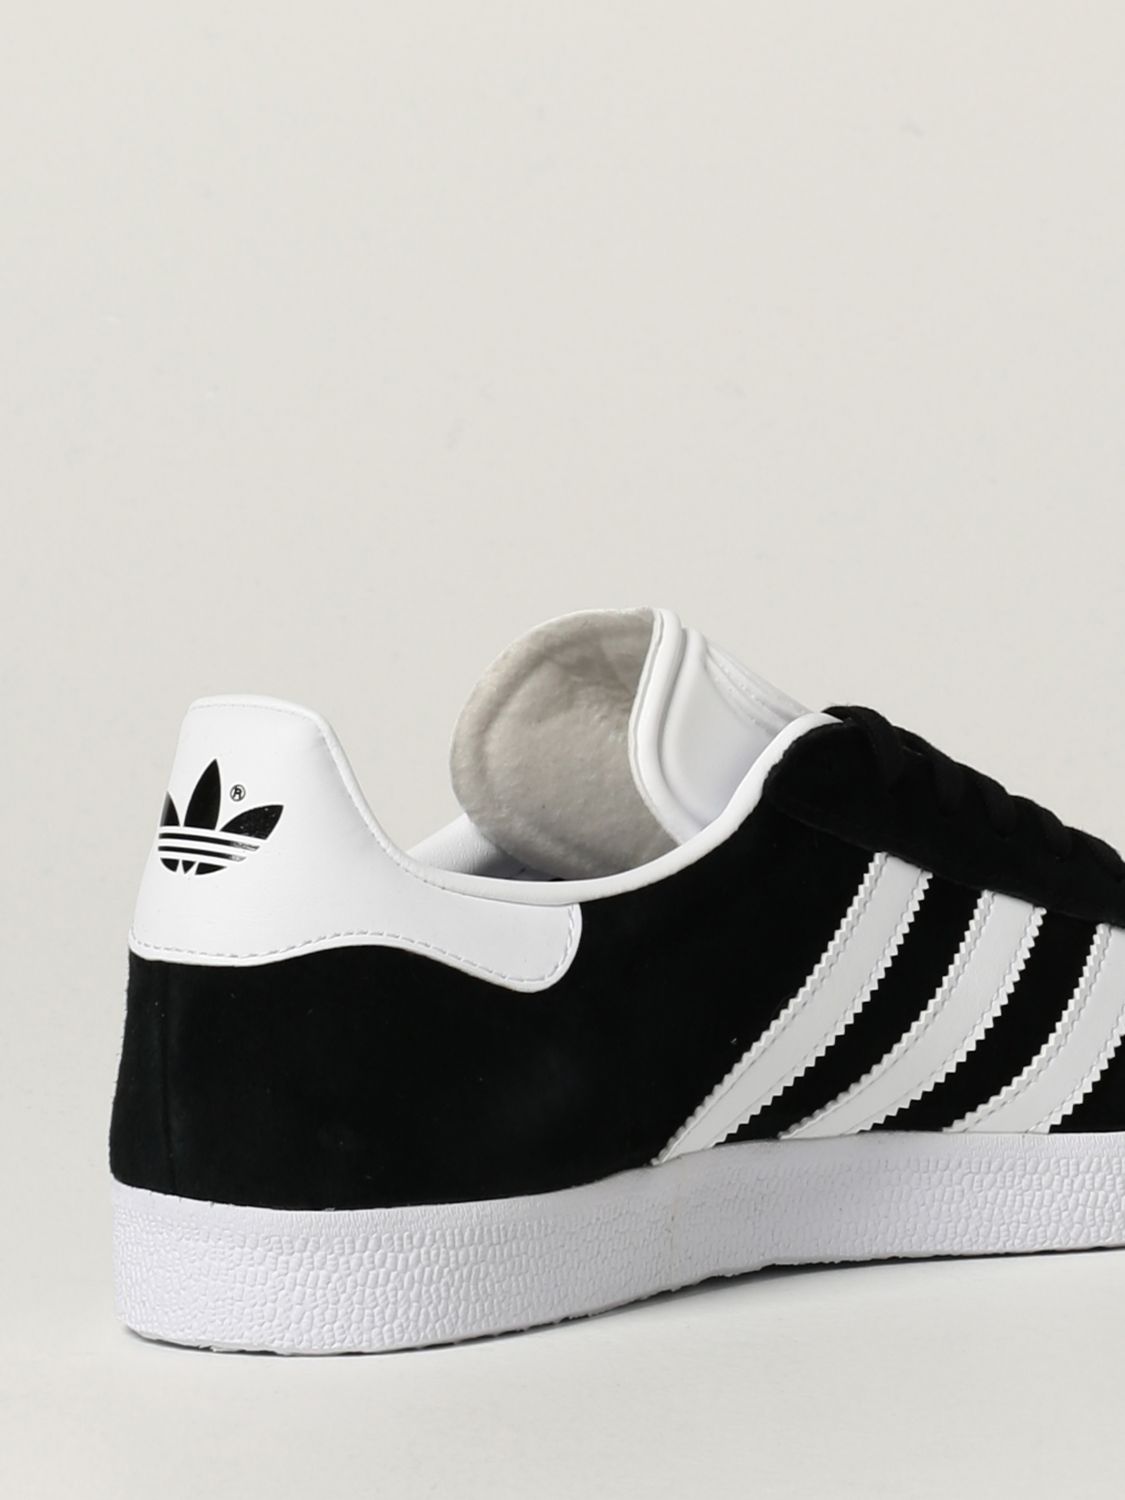 ADIDAS ORIGINALS: Sneakers Gazelle Adidas in camoscio e pelle sintetica |  Sneakers Adidas Originals Uomo Nero | Sneakers Adidas Originals BB5476  GIGLIO.COM